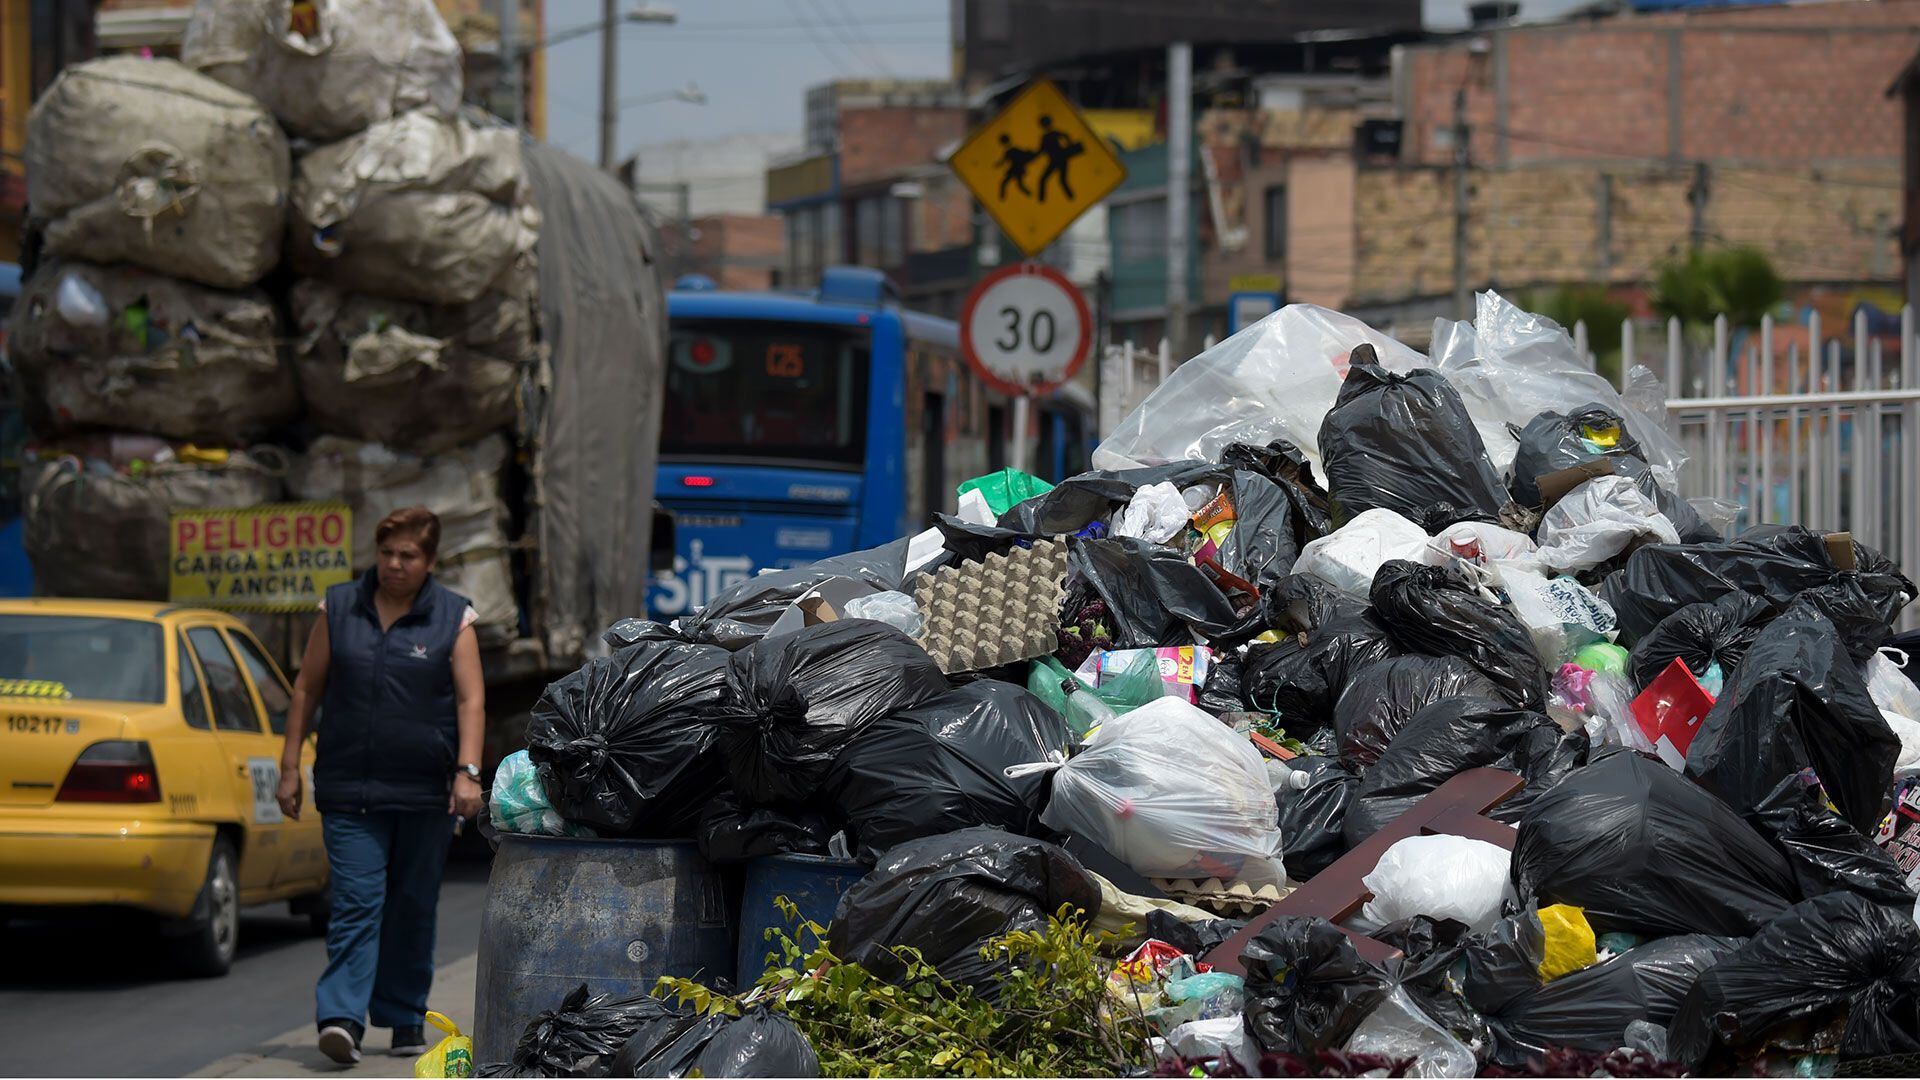 Los contenedores de basura representan problemas de seguridad y salubridad en algunos sectores de Bogotá - Crédito AFP